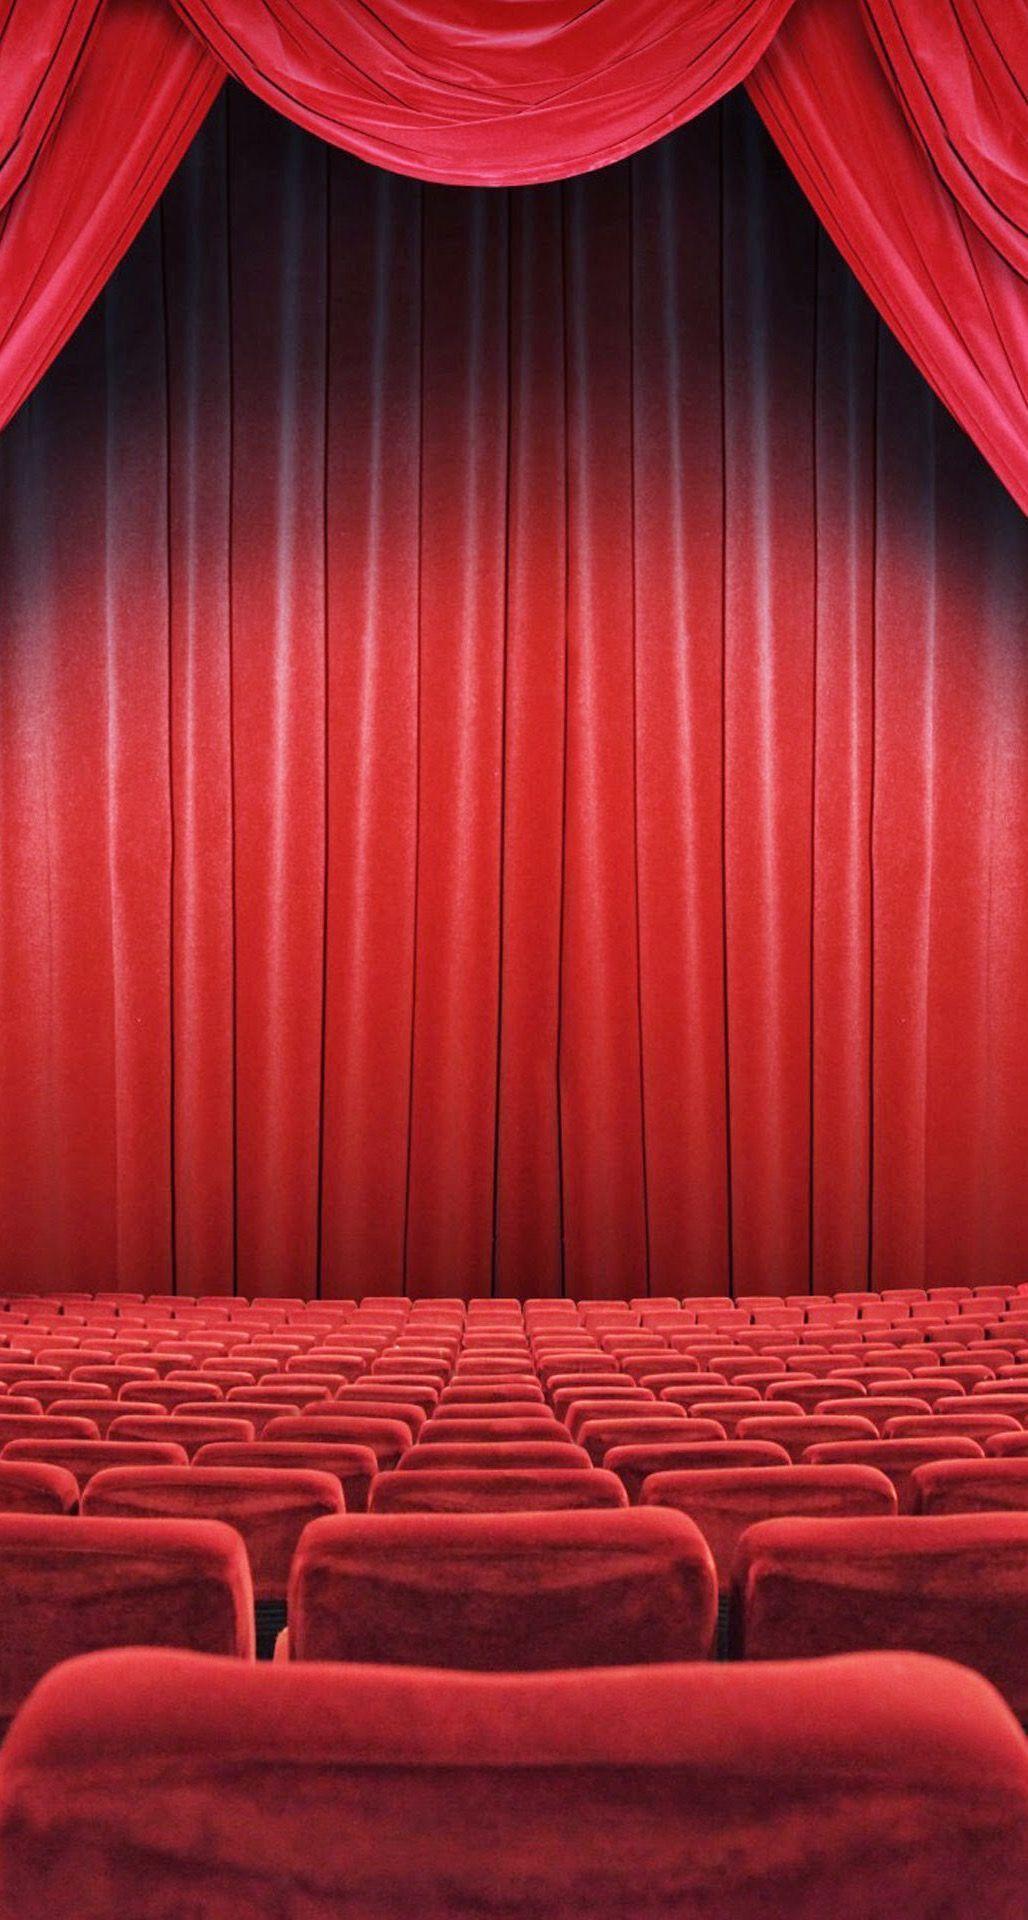 تصویر از نمای اصلی سالن تئاتر با تم سرخ شاداب 